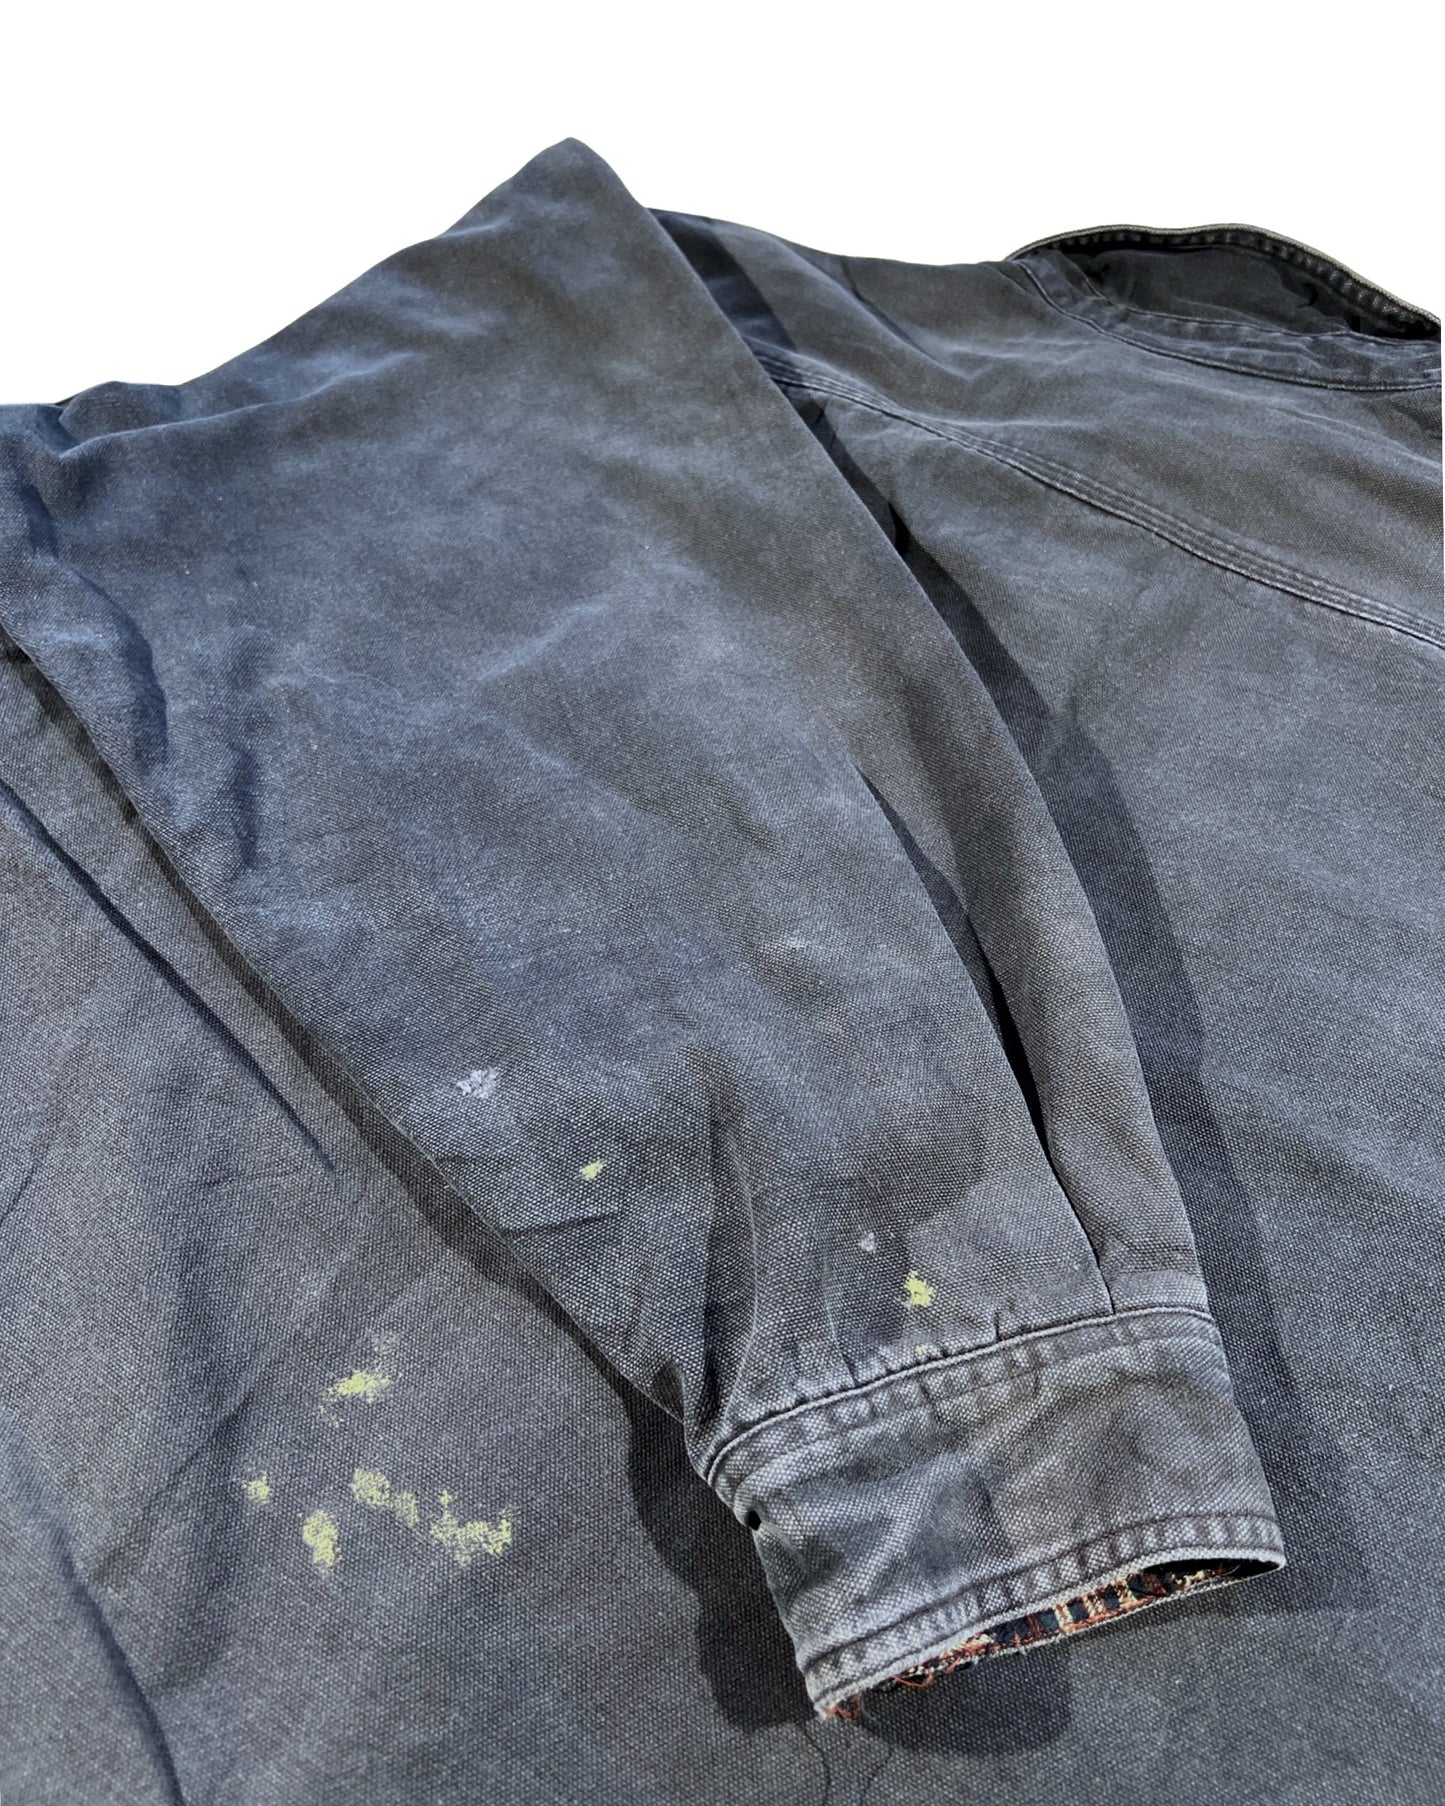 Carhartt Padded Shirt - XL